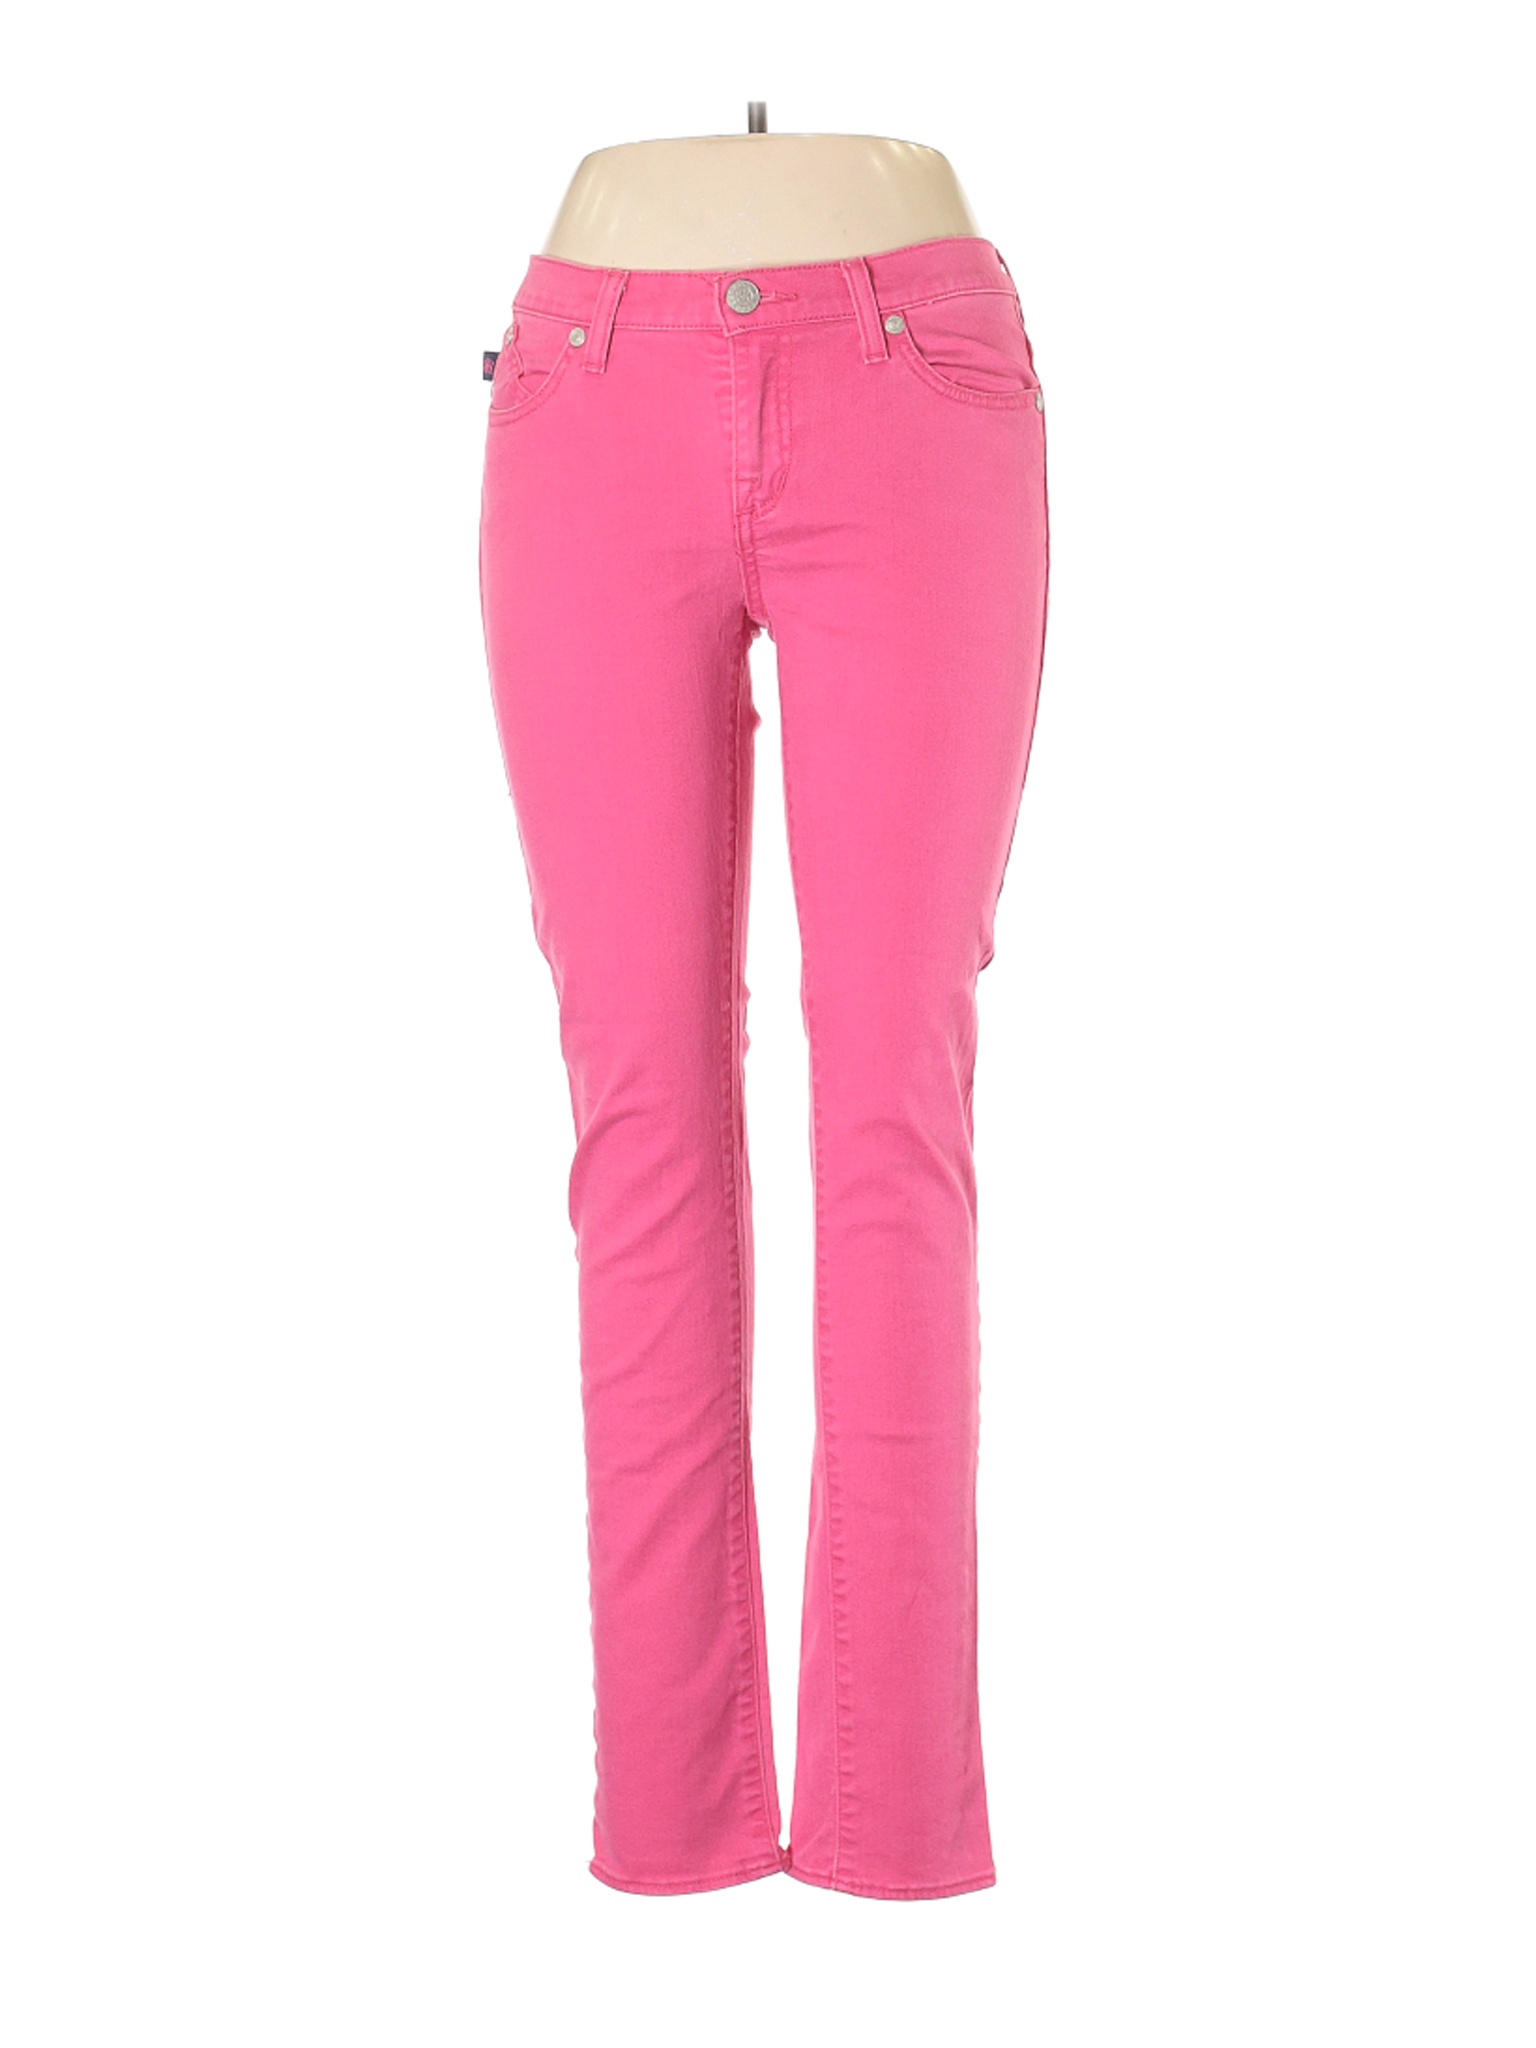 Rock & Republic Women Pink Jeans 10 | eBay